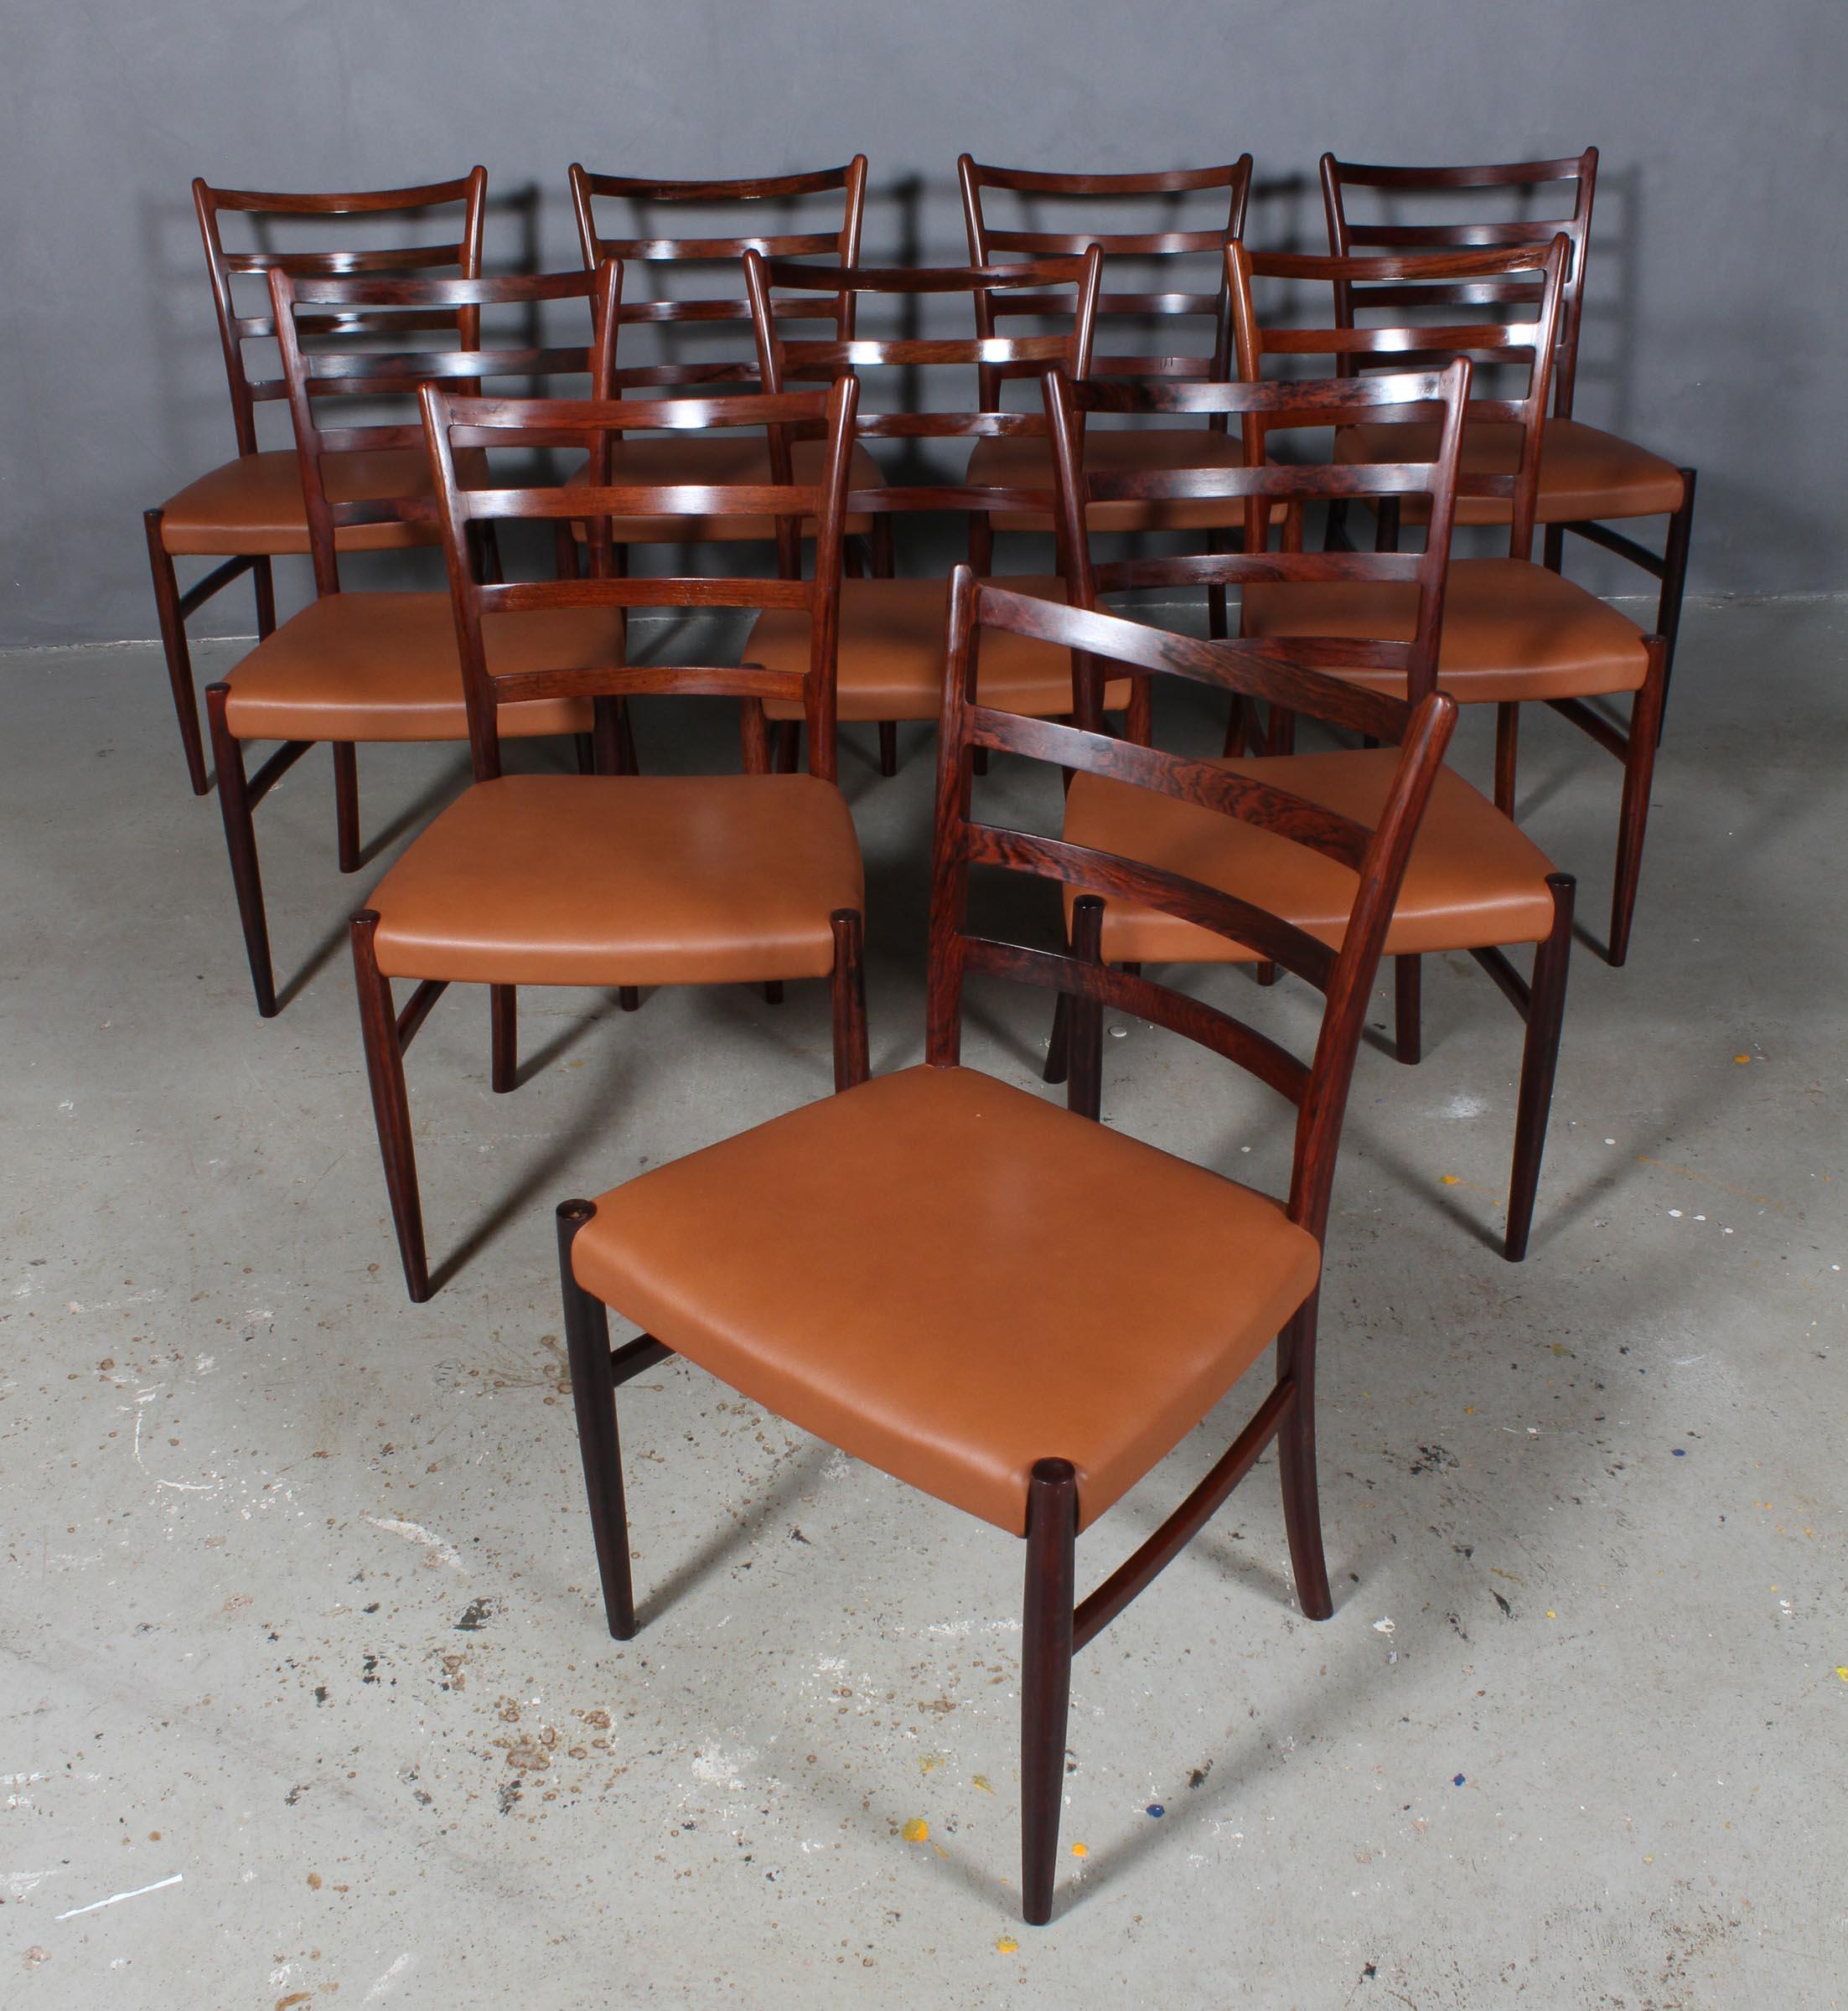 Skovby Møbelfabrik ensemble de quatre chaises de salle à manger en bois de rose partiellement massif.

Nouveau rembourrage en cuir aniline cognac.

Fabriqué dans les années 1960.